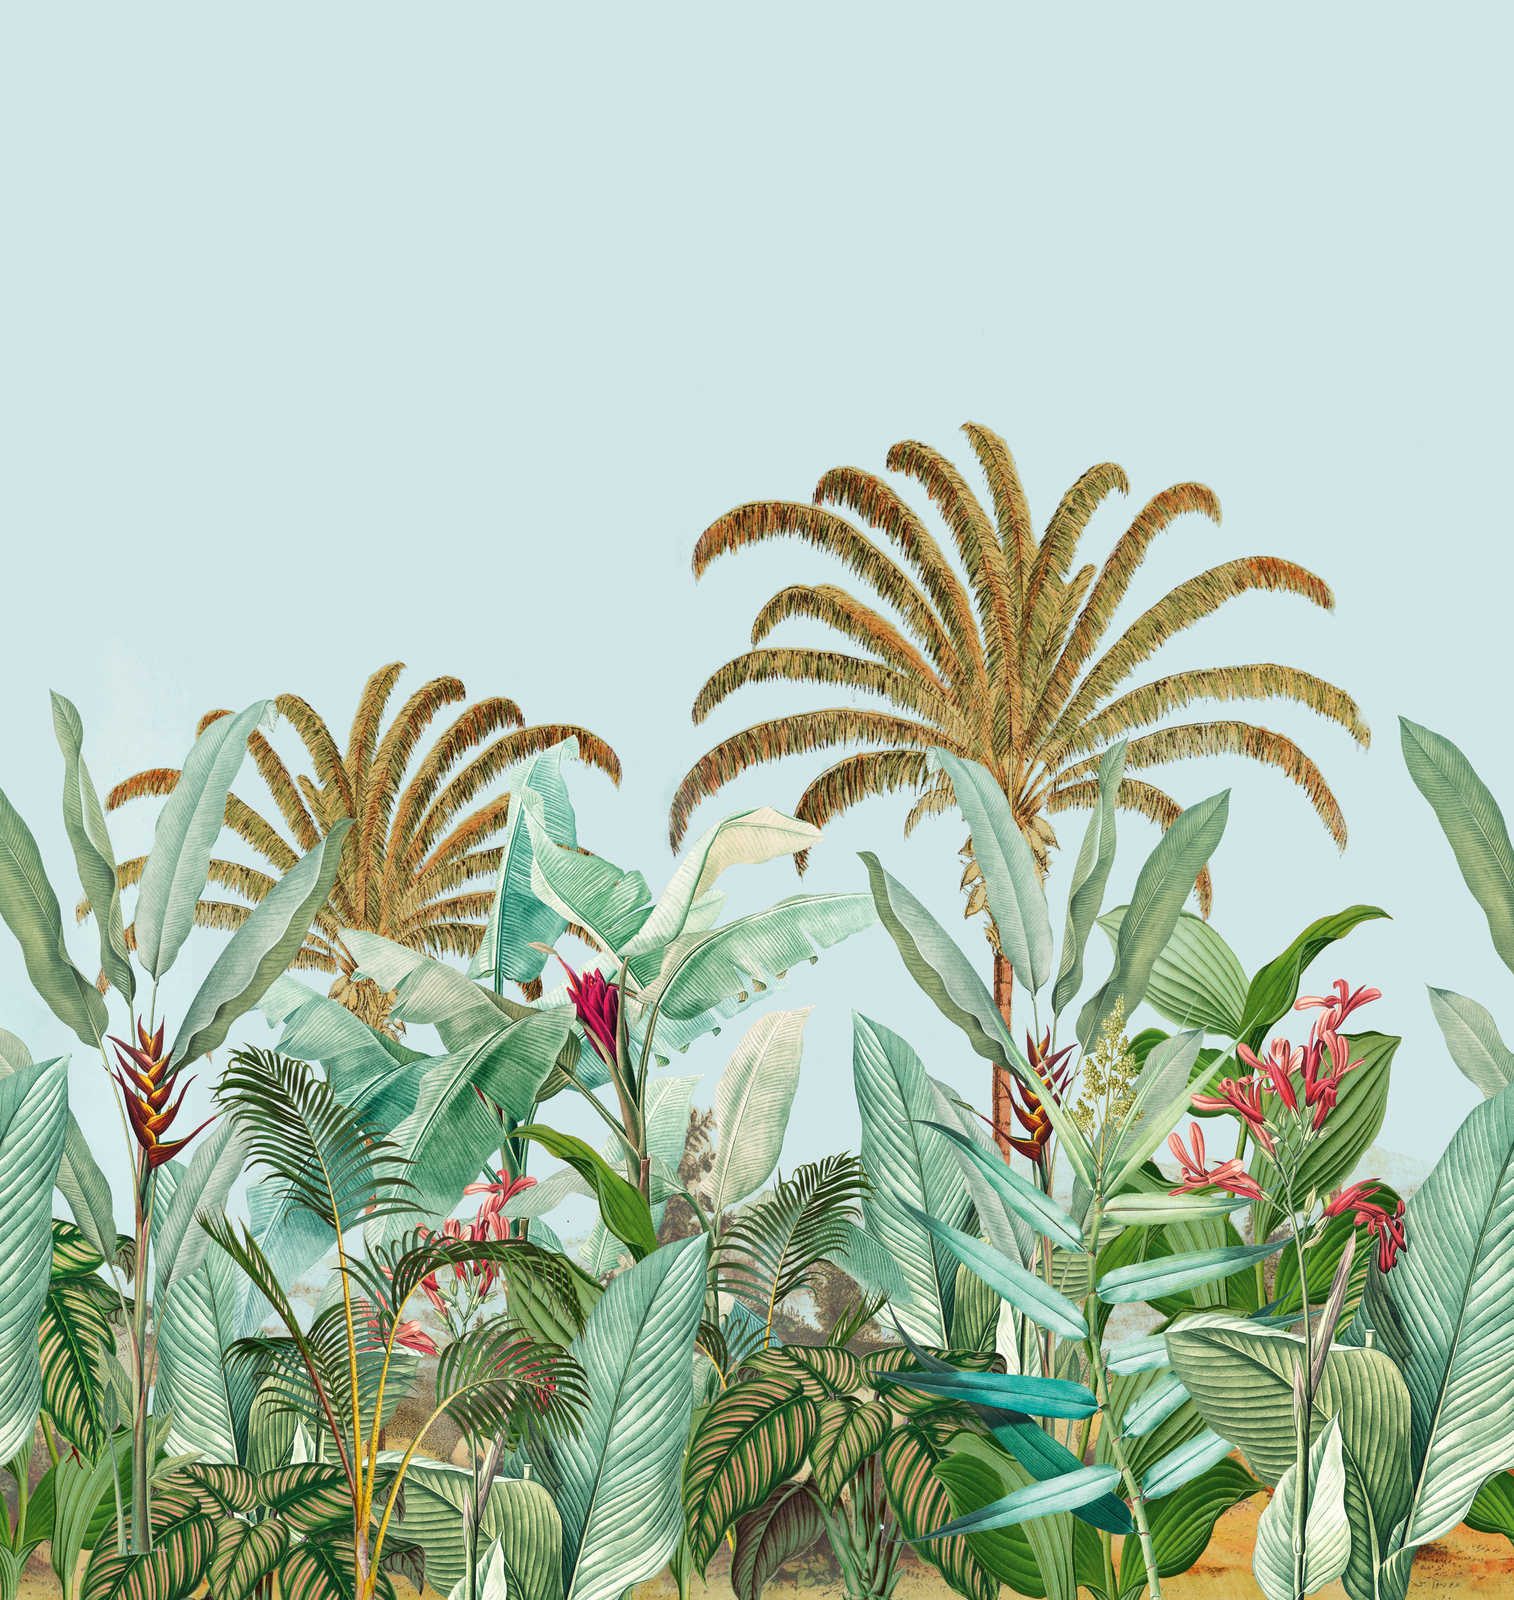             Vliestapete mit Dschungelmotiv in kräftigen Farben – Blau, Grün, Pink
        